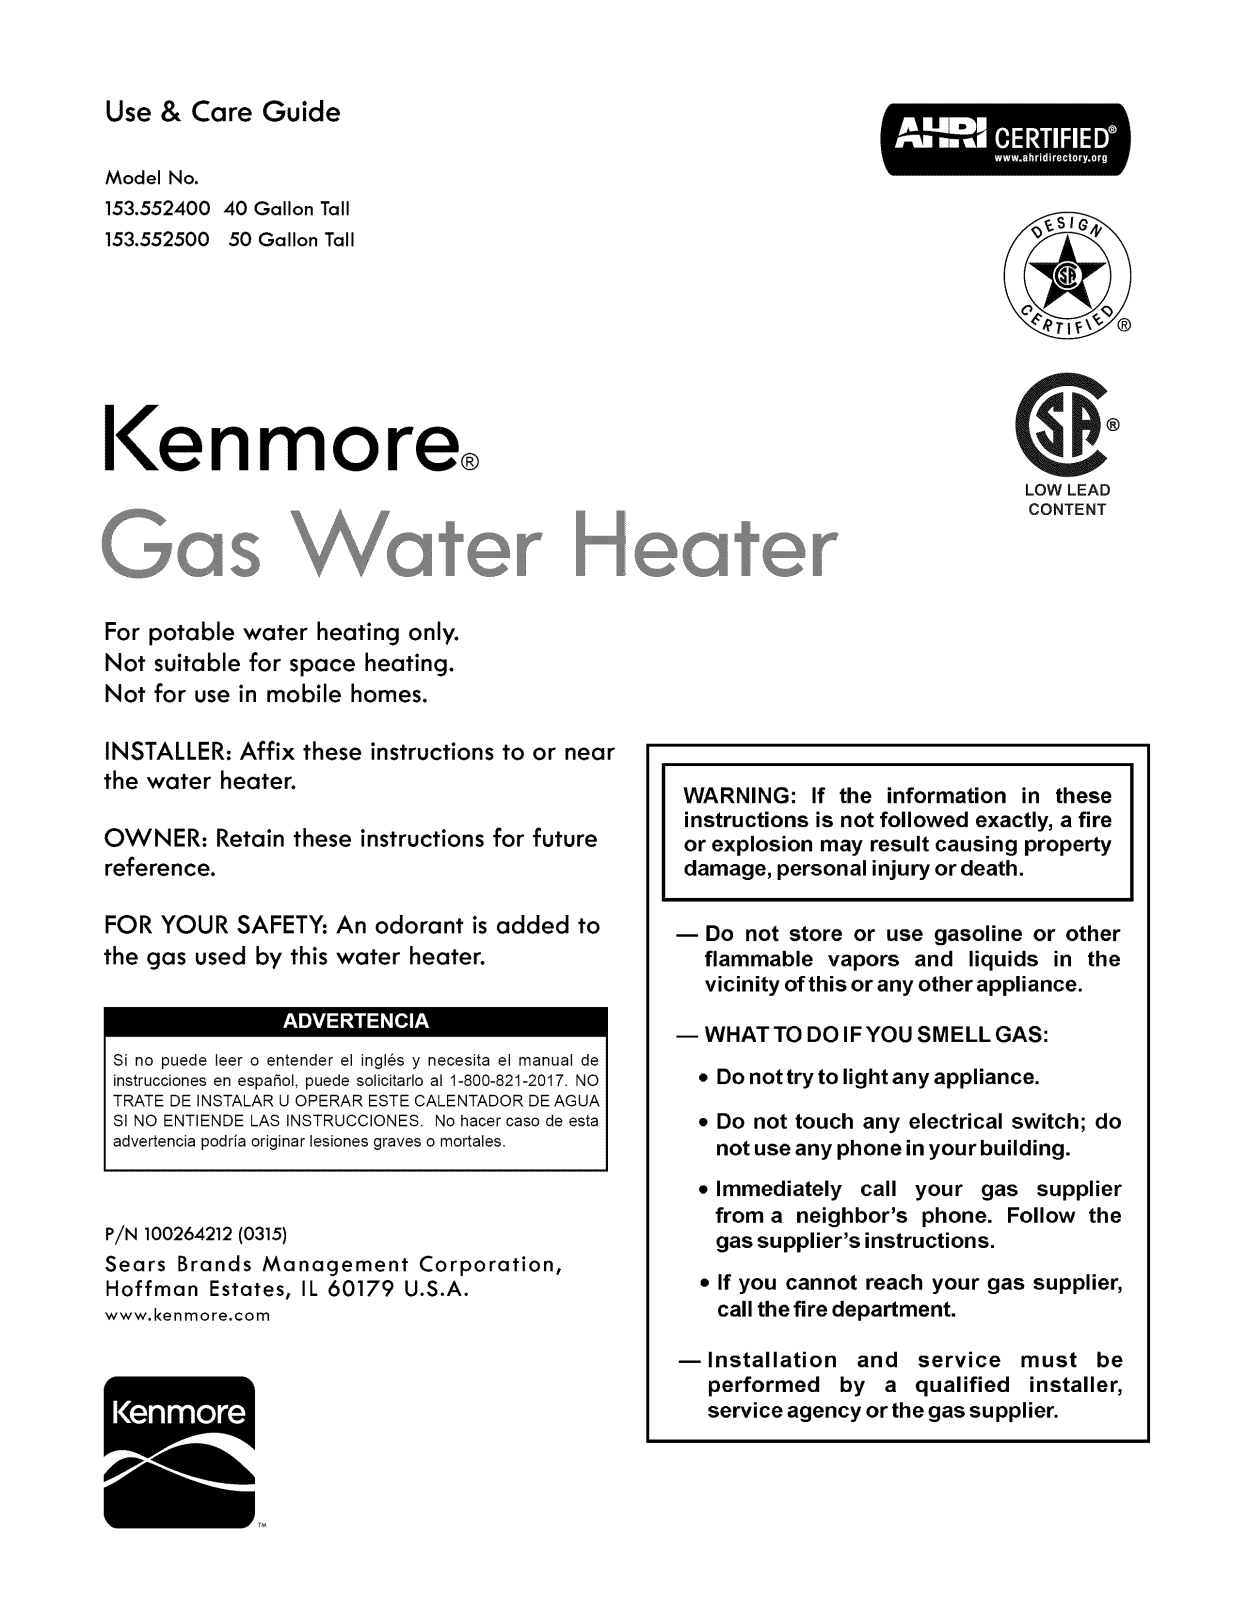 Kenmore 153552500 Owner’s Manual